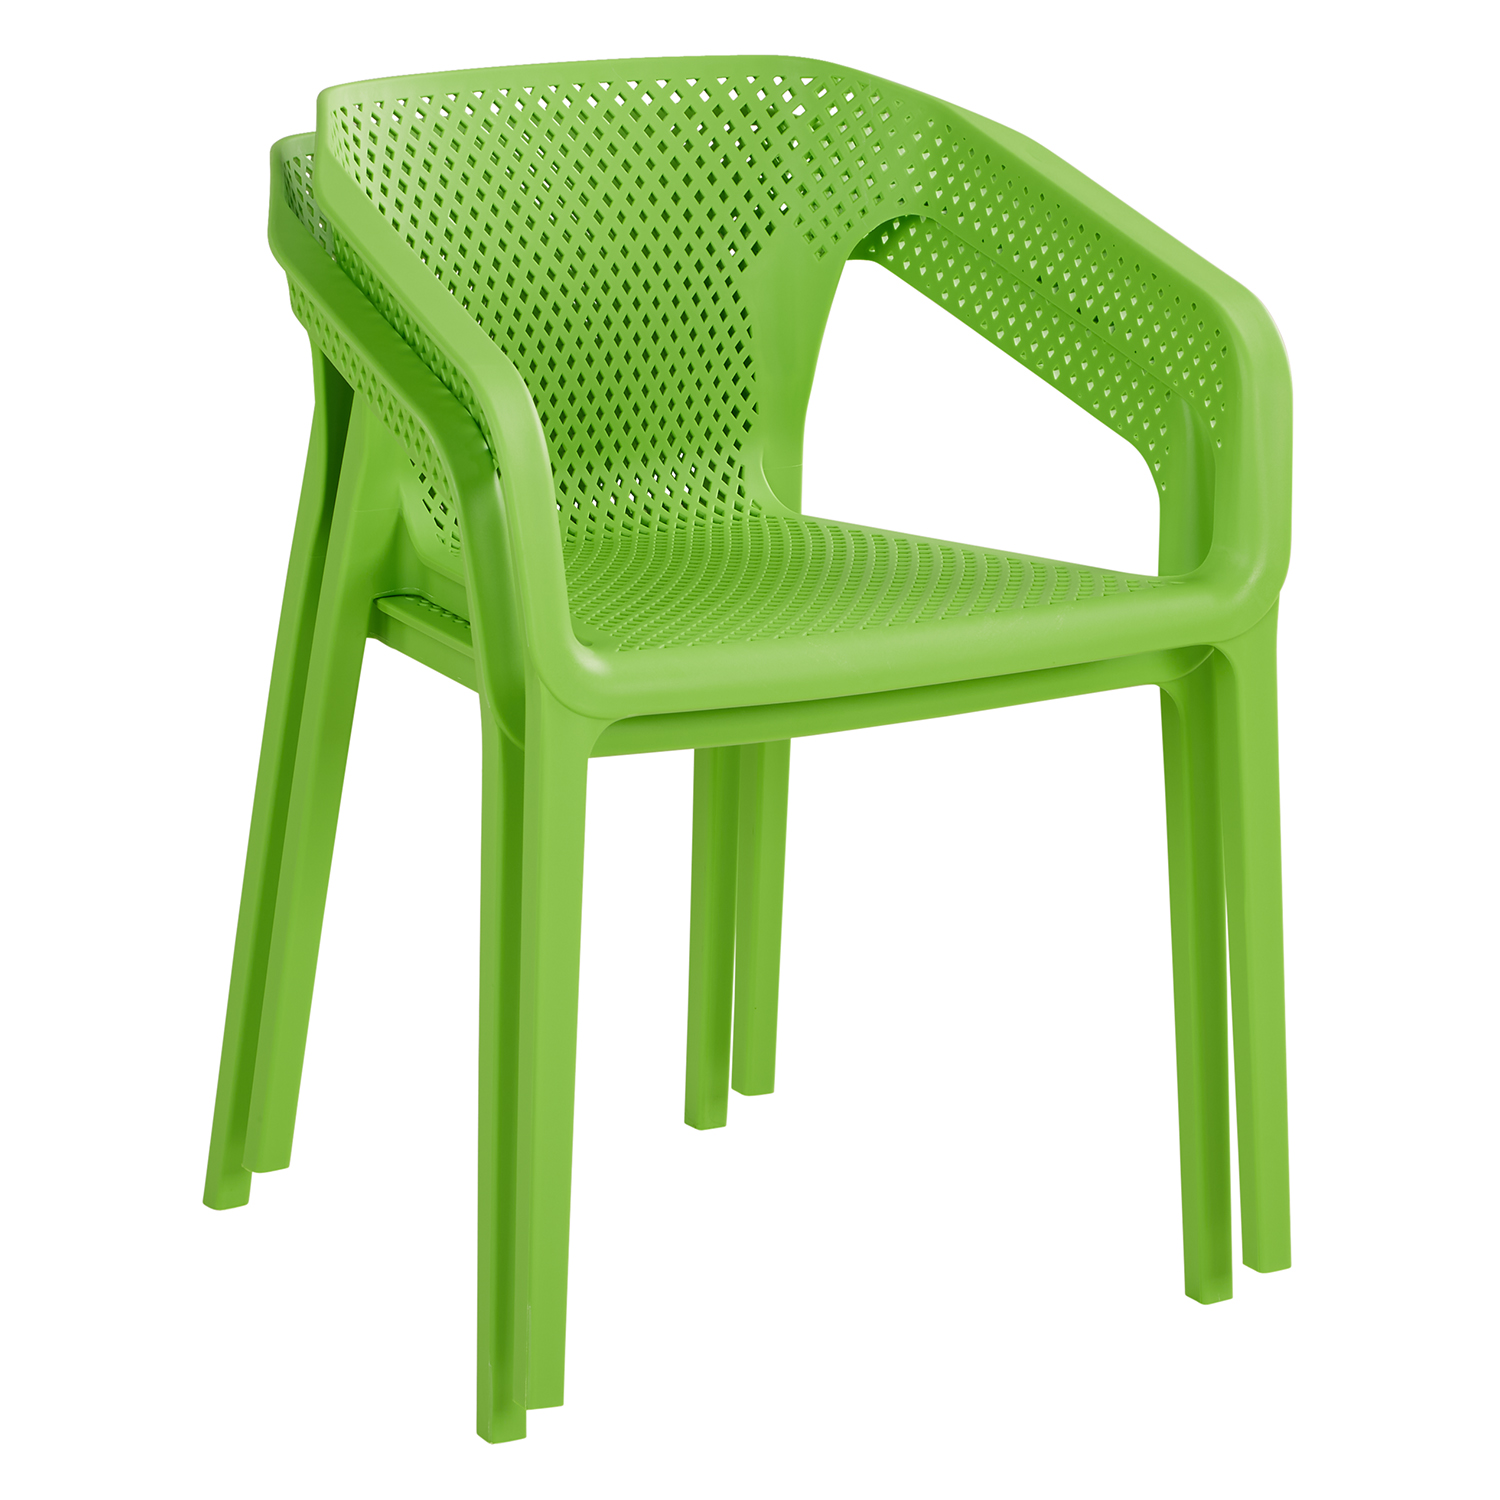 Chaise de jardin avec accoudoirs Vert Lot de 6 Fauteuils de jardin Plastique Chaises exterieur Chaises empilable